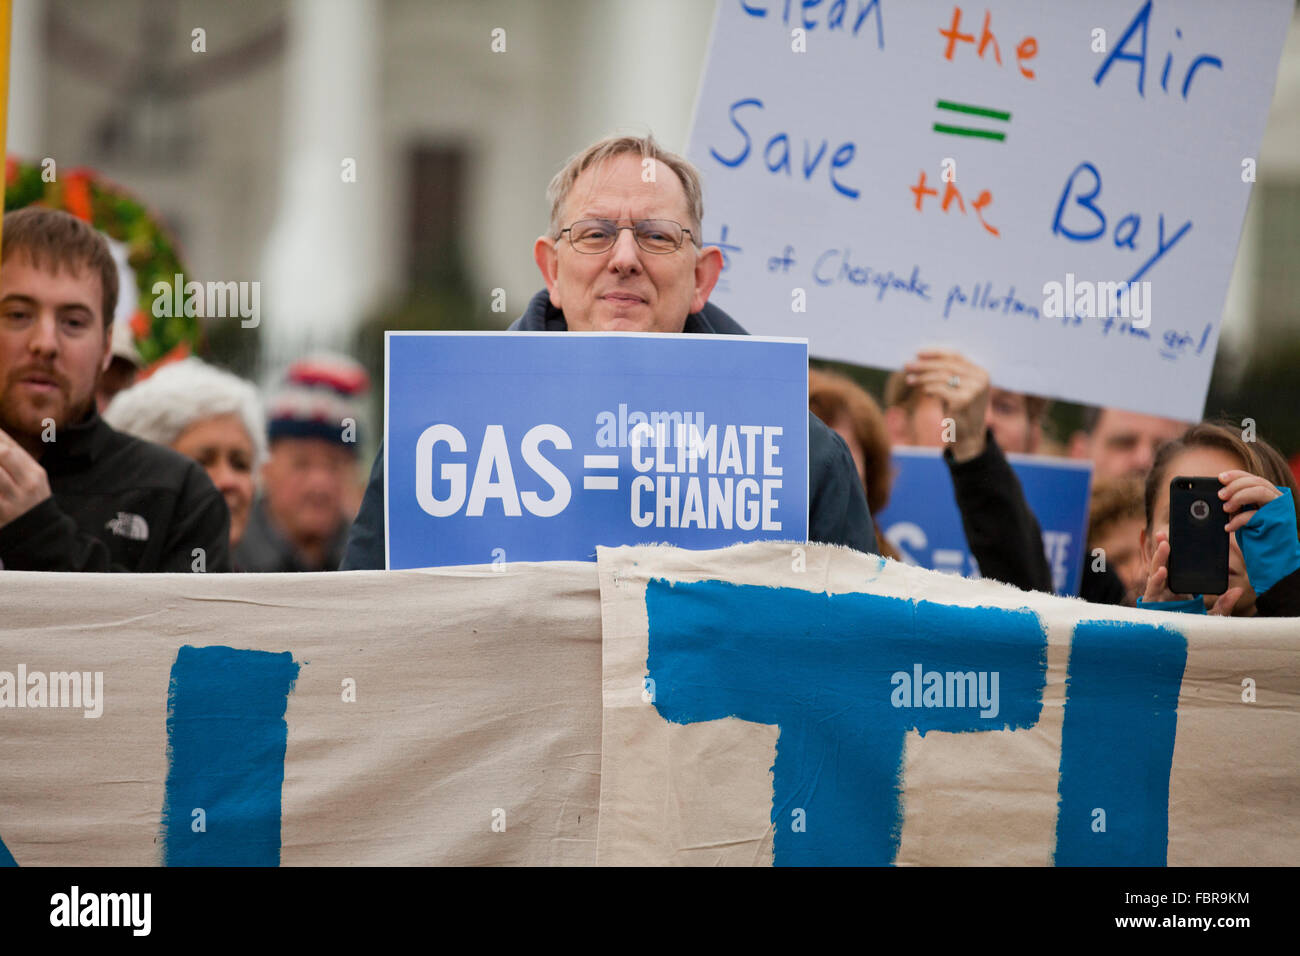 Noviembre 21, 2015, Washington, DC, EE.UU.: Los activistas ecologistas protesta en frente de la Casa Blanca (Hombre sujetando 'Gas = Cambio Climático' firmar) Foto de stock